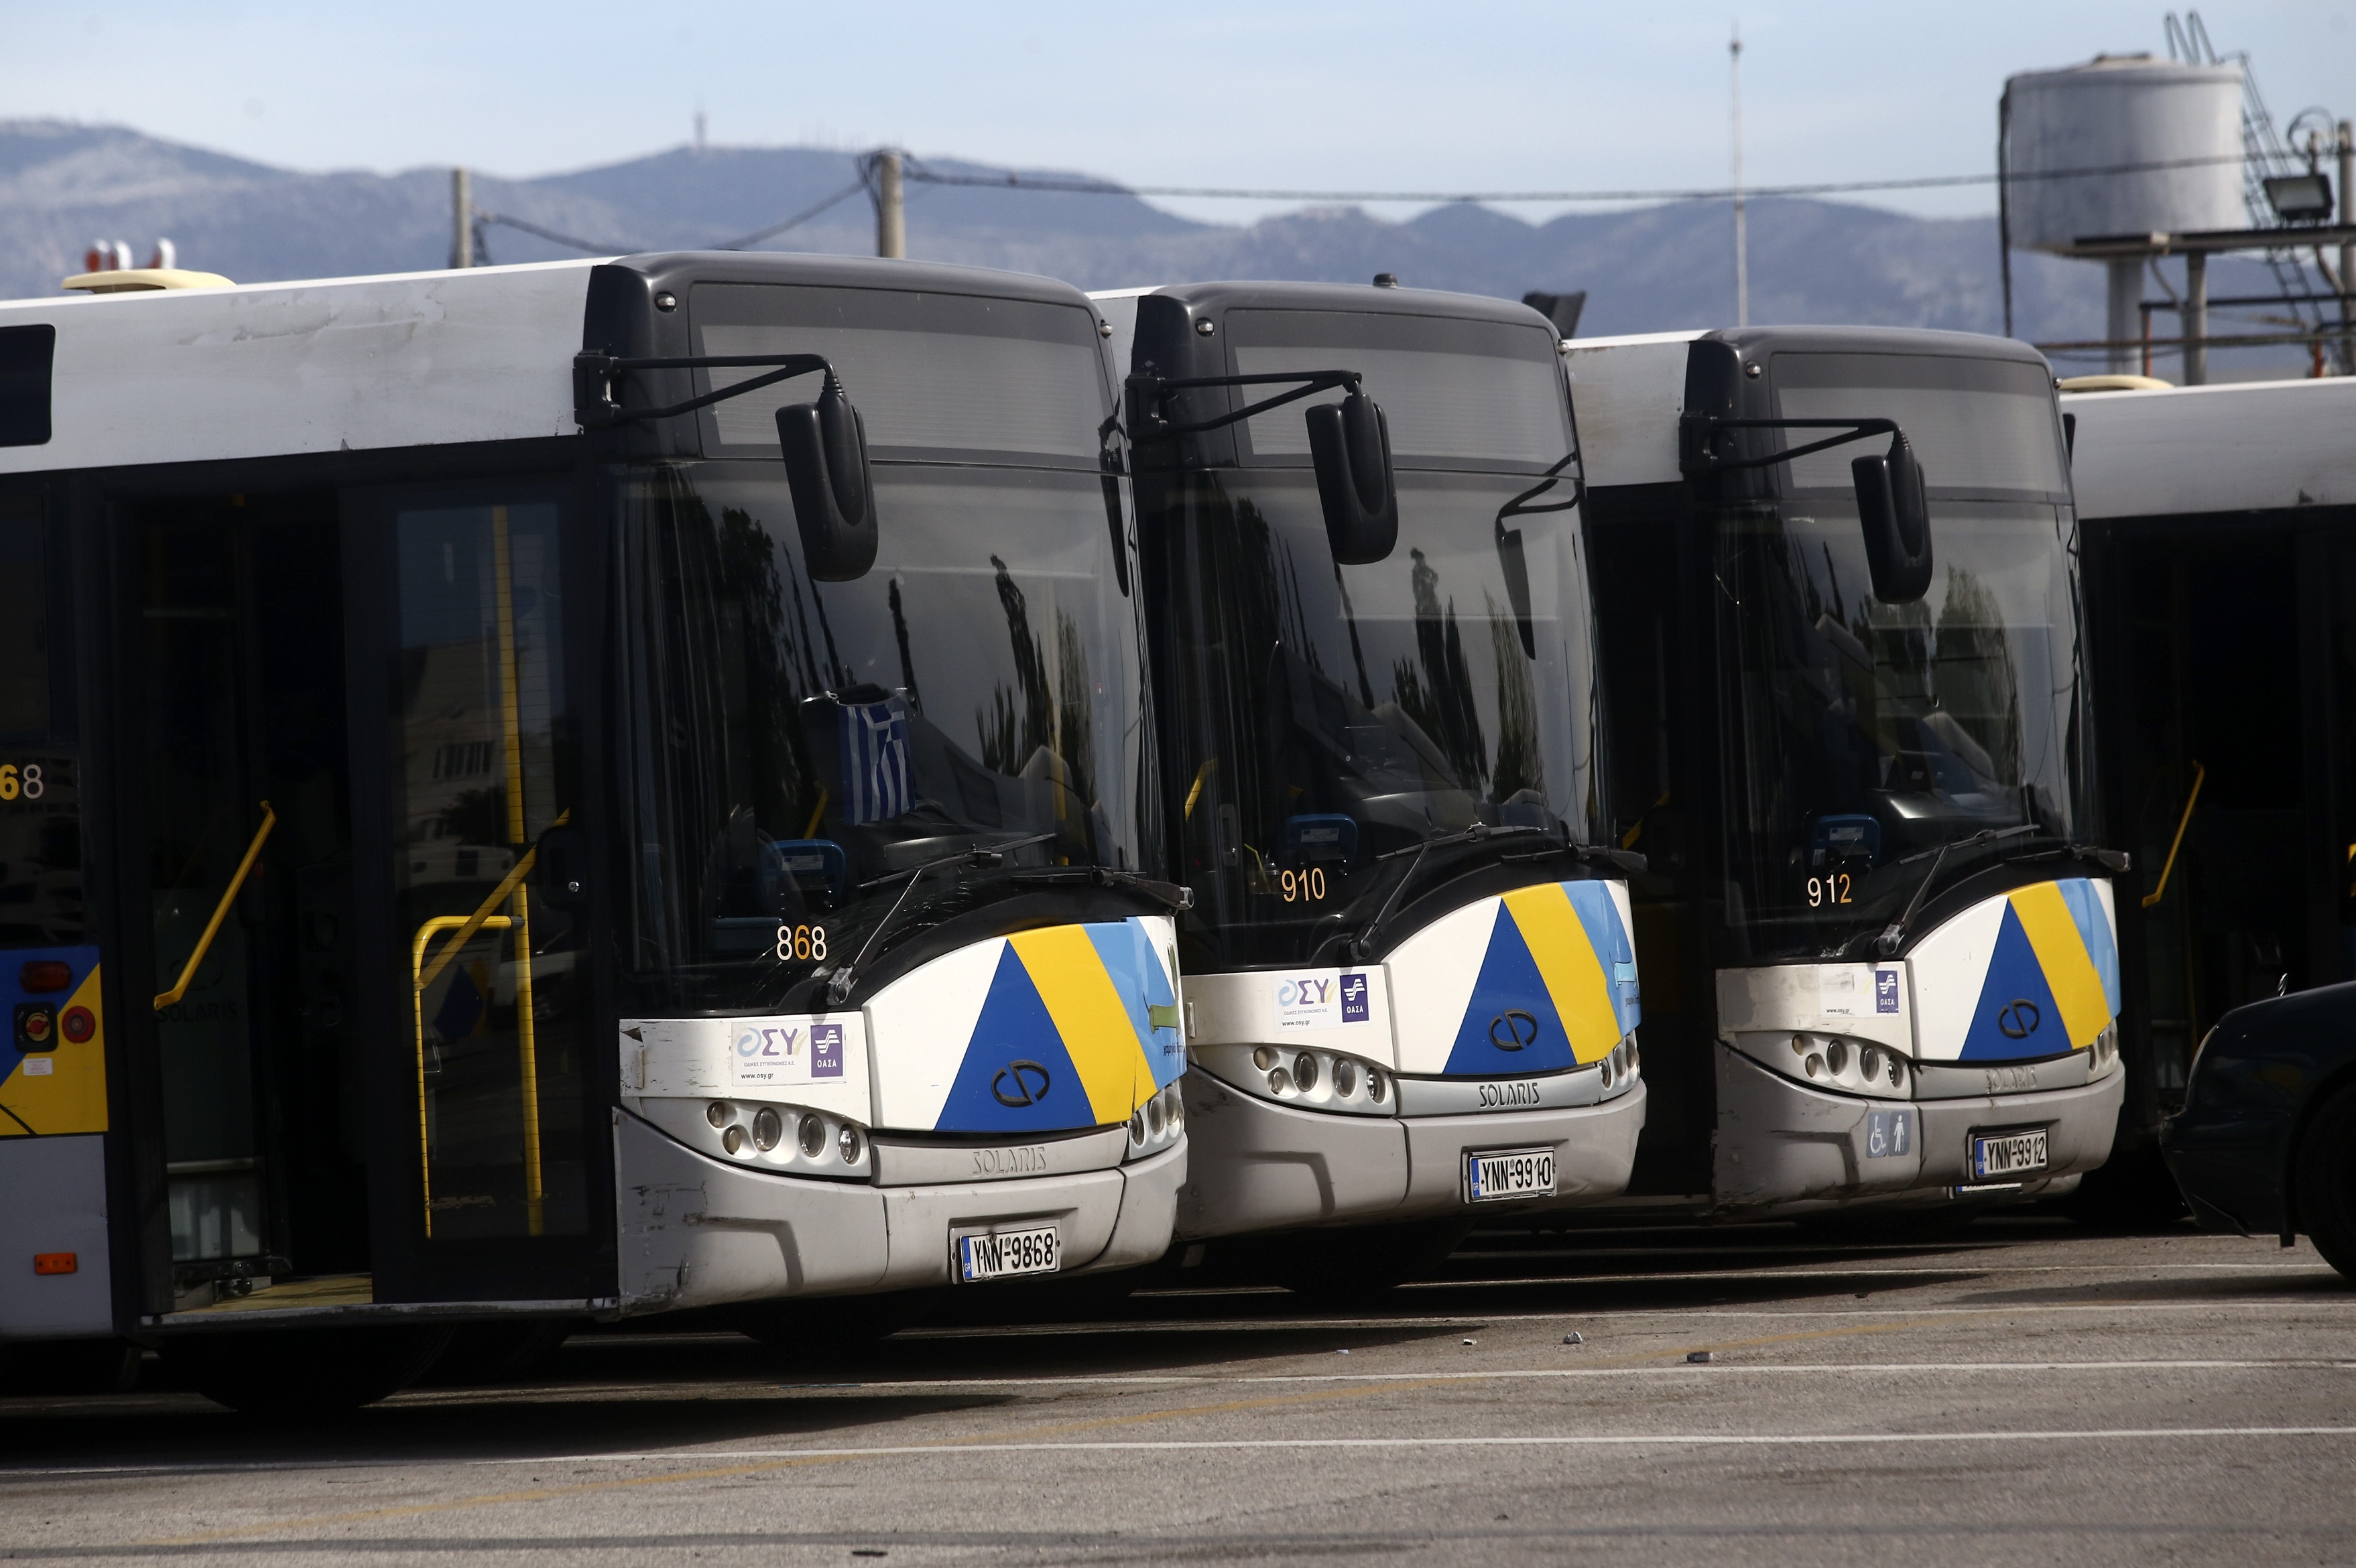 Αλλαγές σε δρομολόγια λεωφορείων και συγχωνεύσεις γραμμών ανακοίνωσε ο ΟΑΣΑ